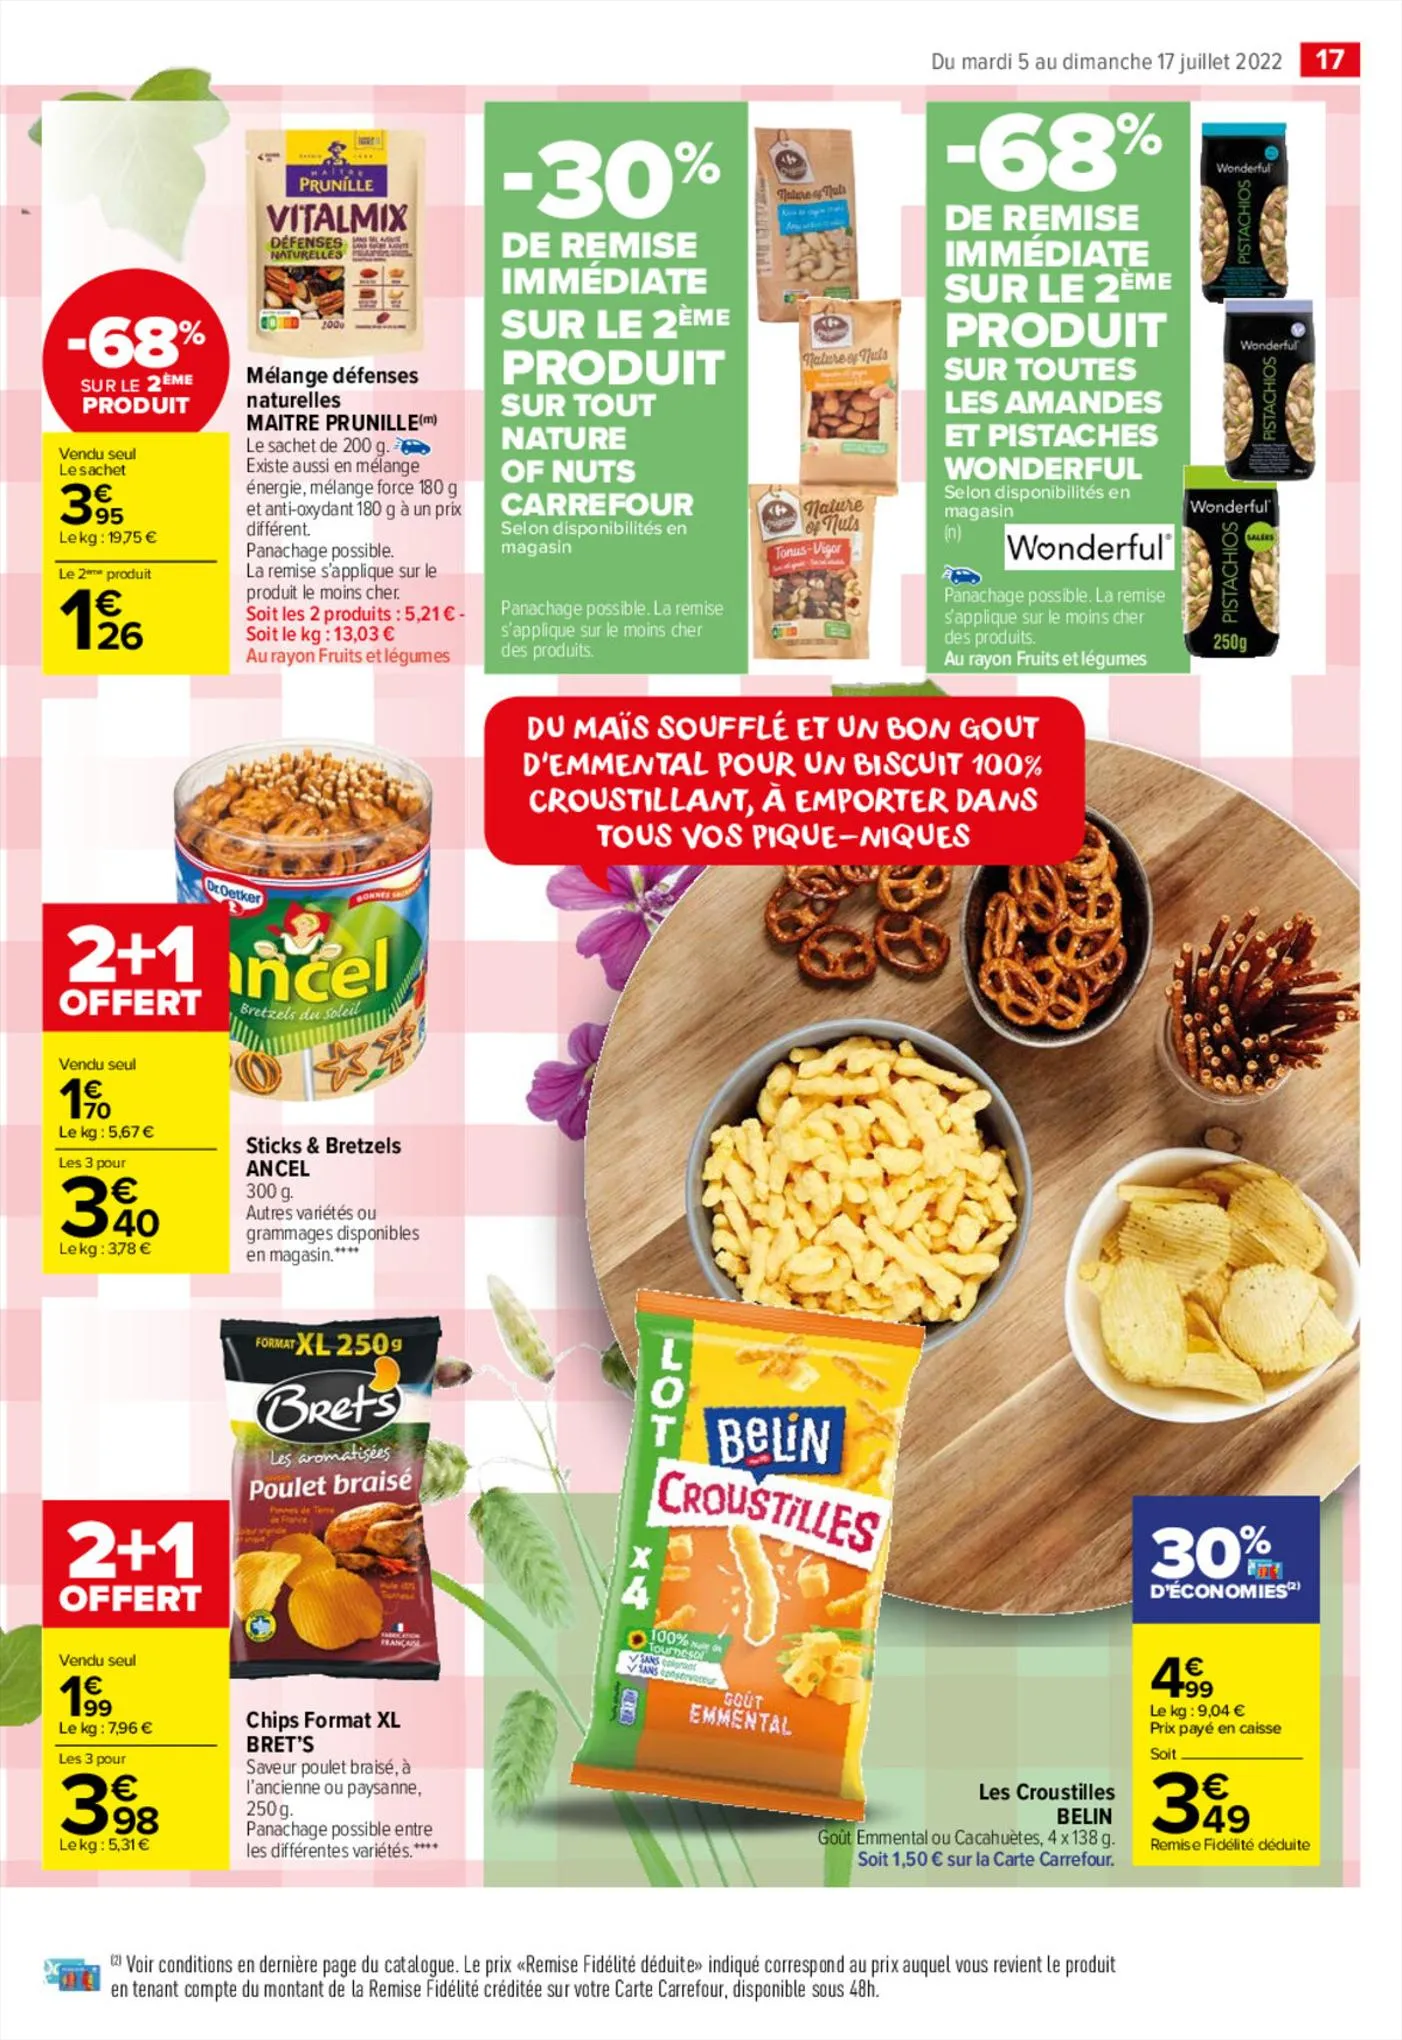 Catalogue Des promos toutes fraîches !, page 00017